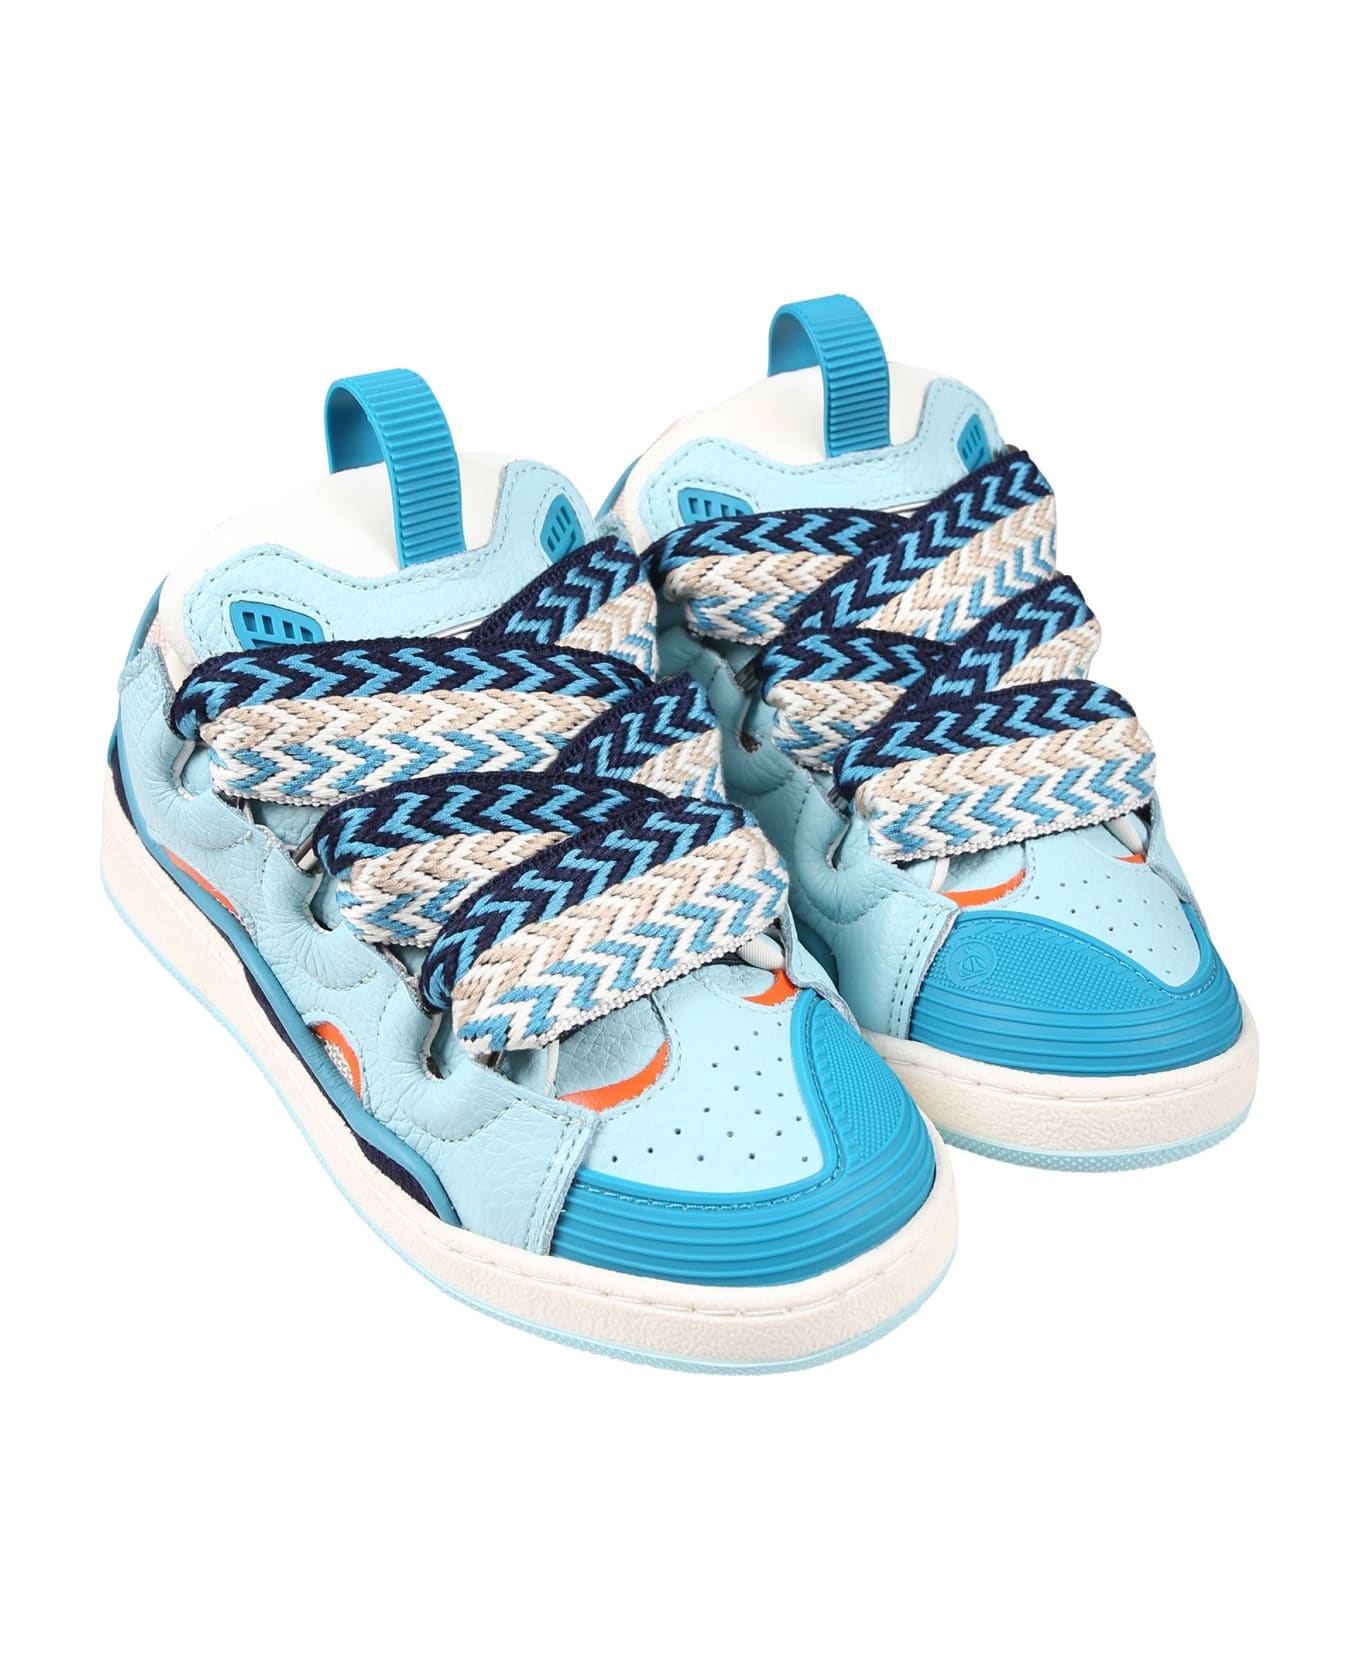 Lanvin Light Blue Sneakers For Boy - Blu シューズ